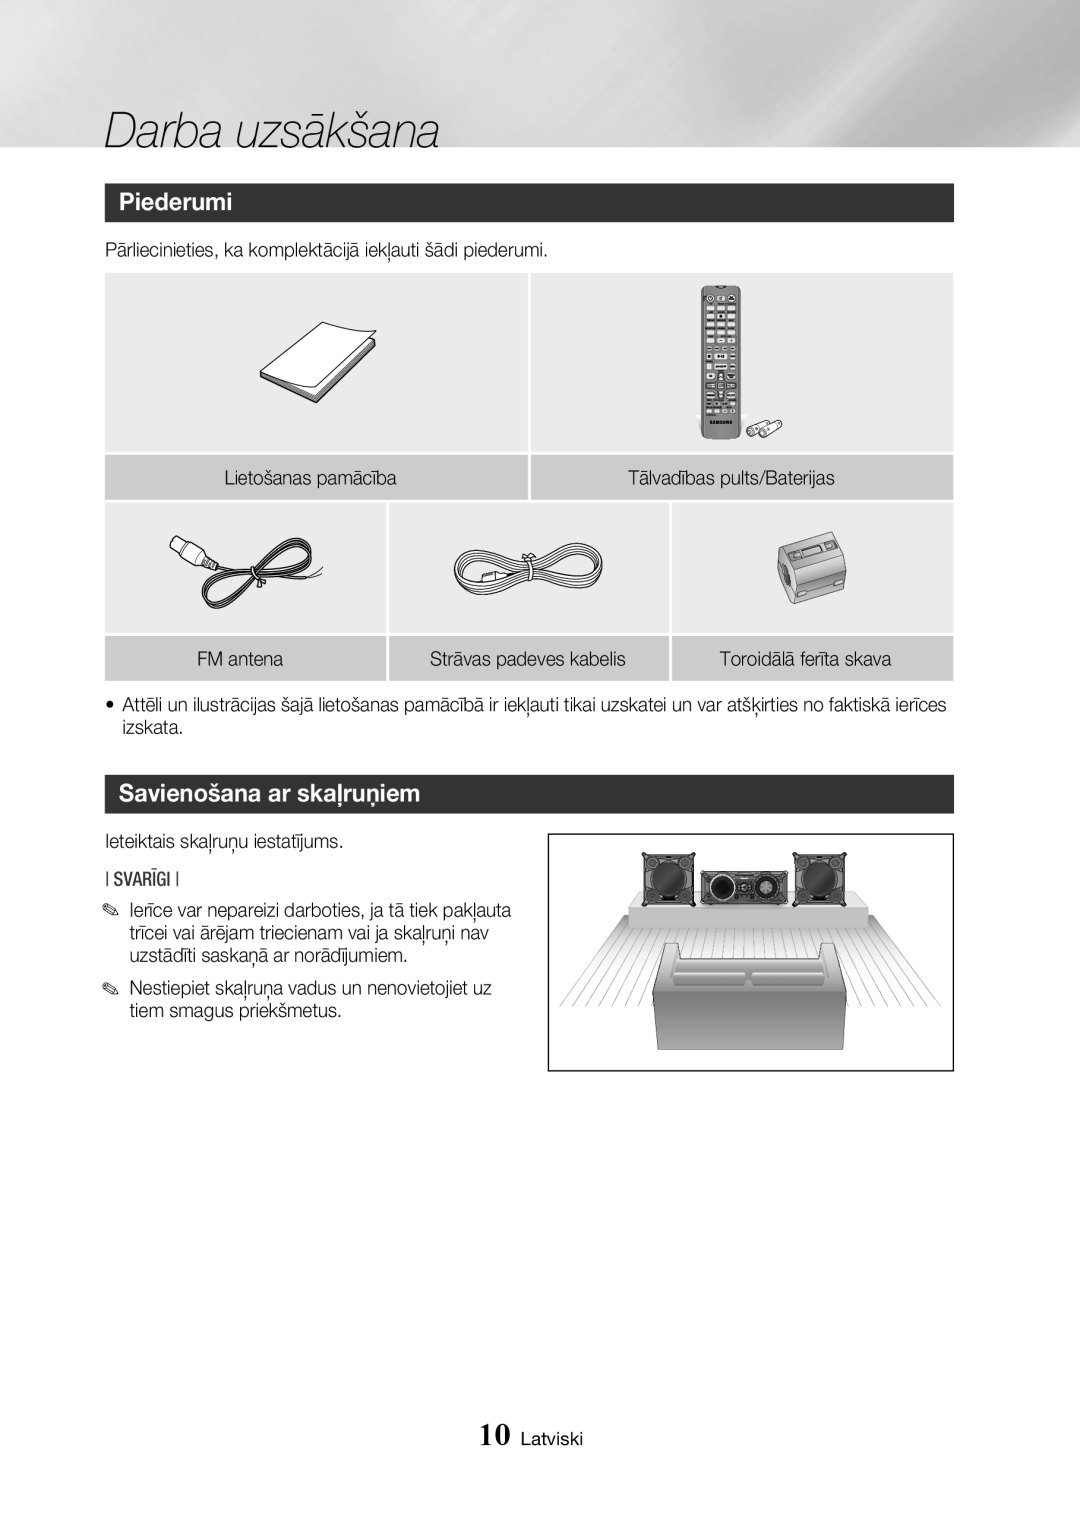 Samsung MX-HS8000/EN manual Piederumi, Savienošana ar skaļruņiem, Svarīgi, Darba uzsākšana, Latviski 